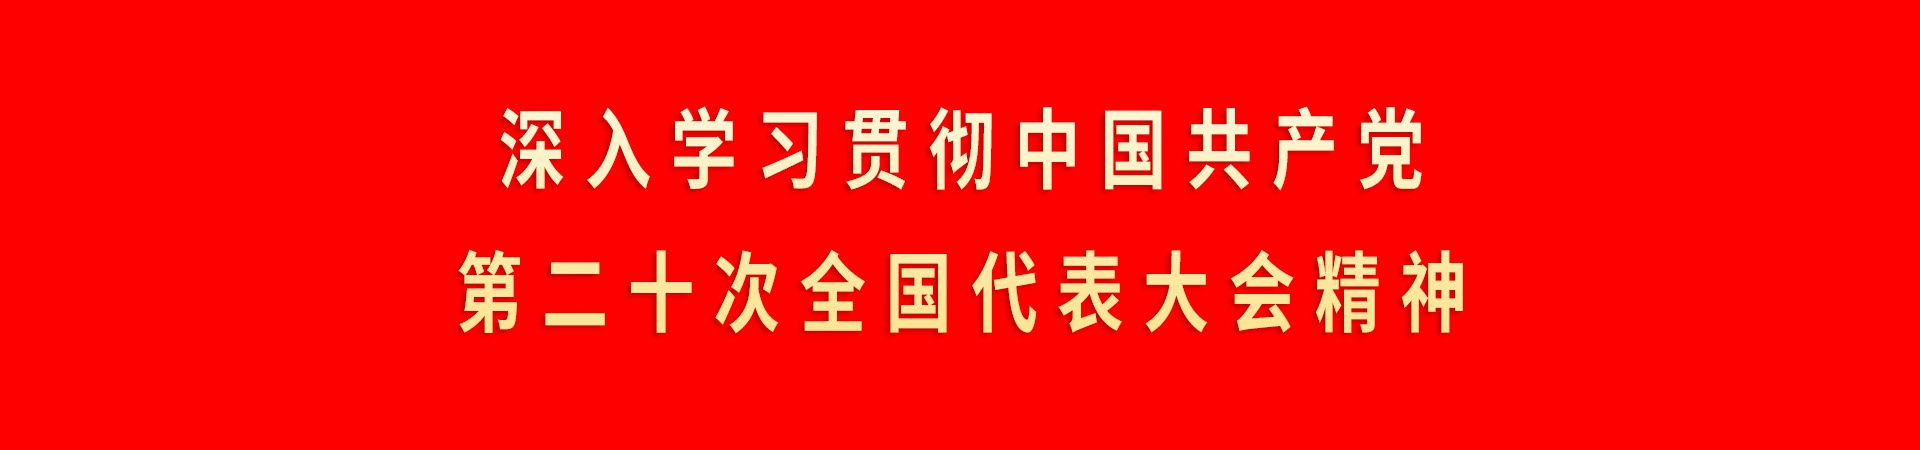 深入學習貫徹中國(guó)共産黨第二十次全國(guó)代表大會精神